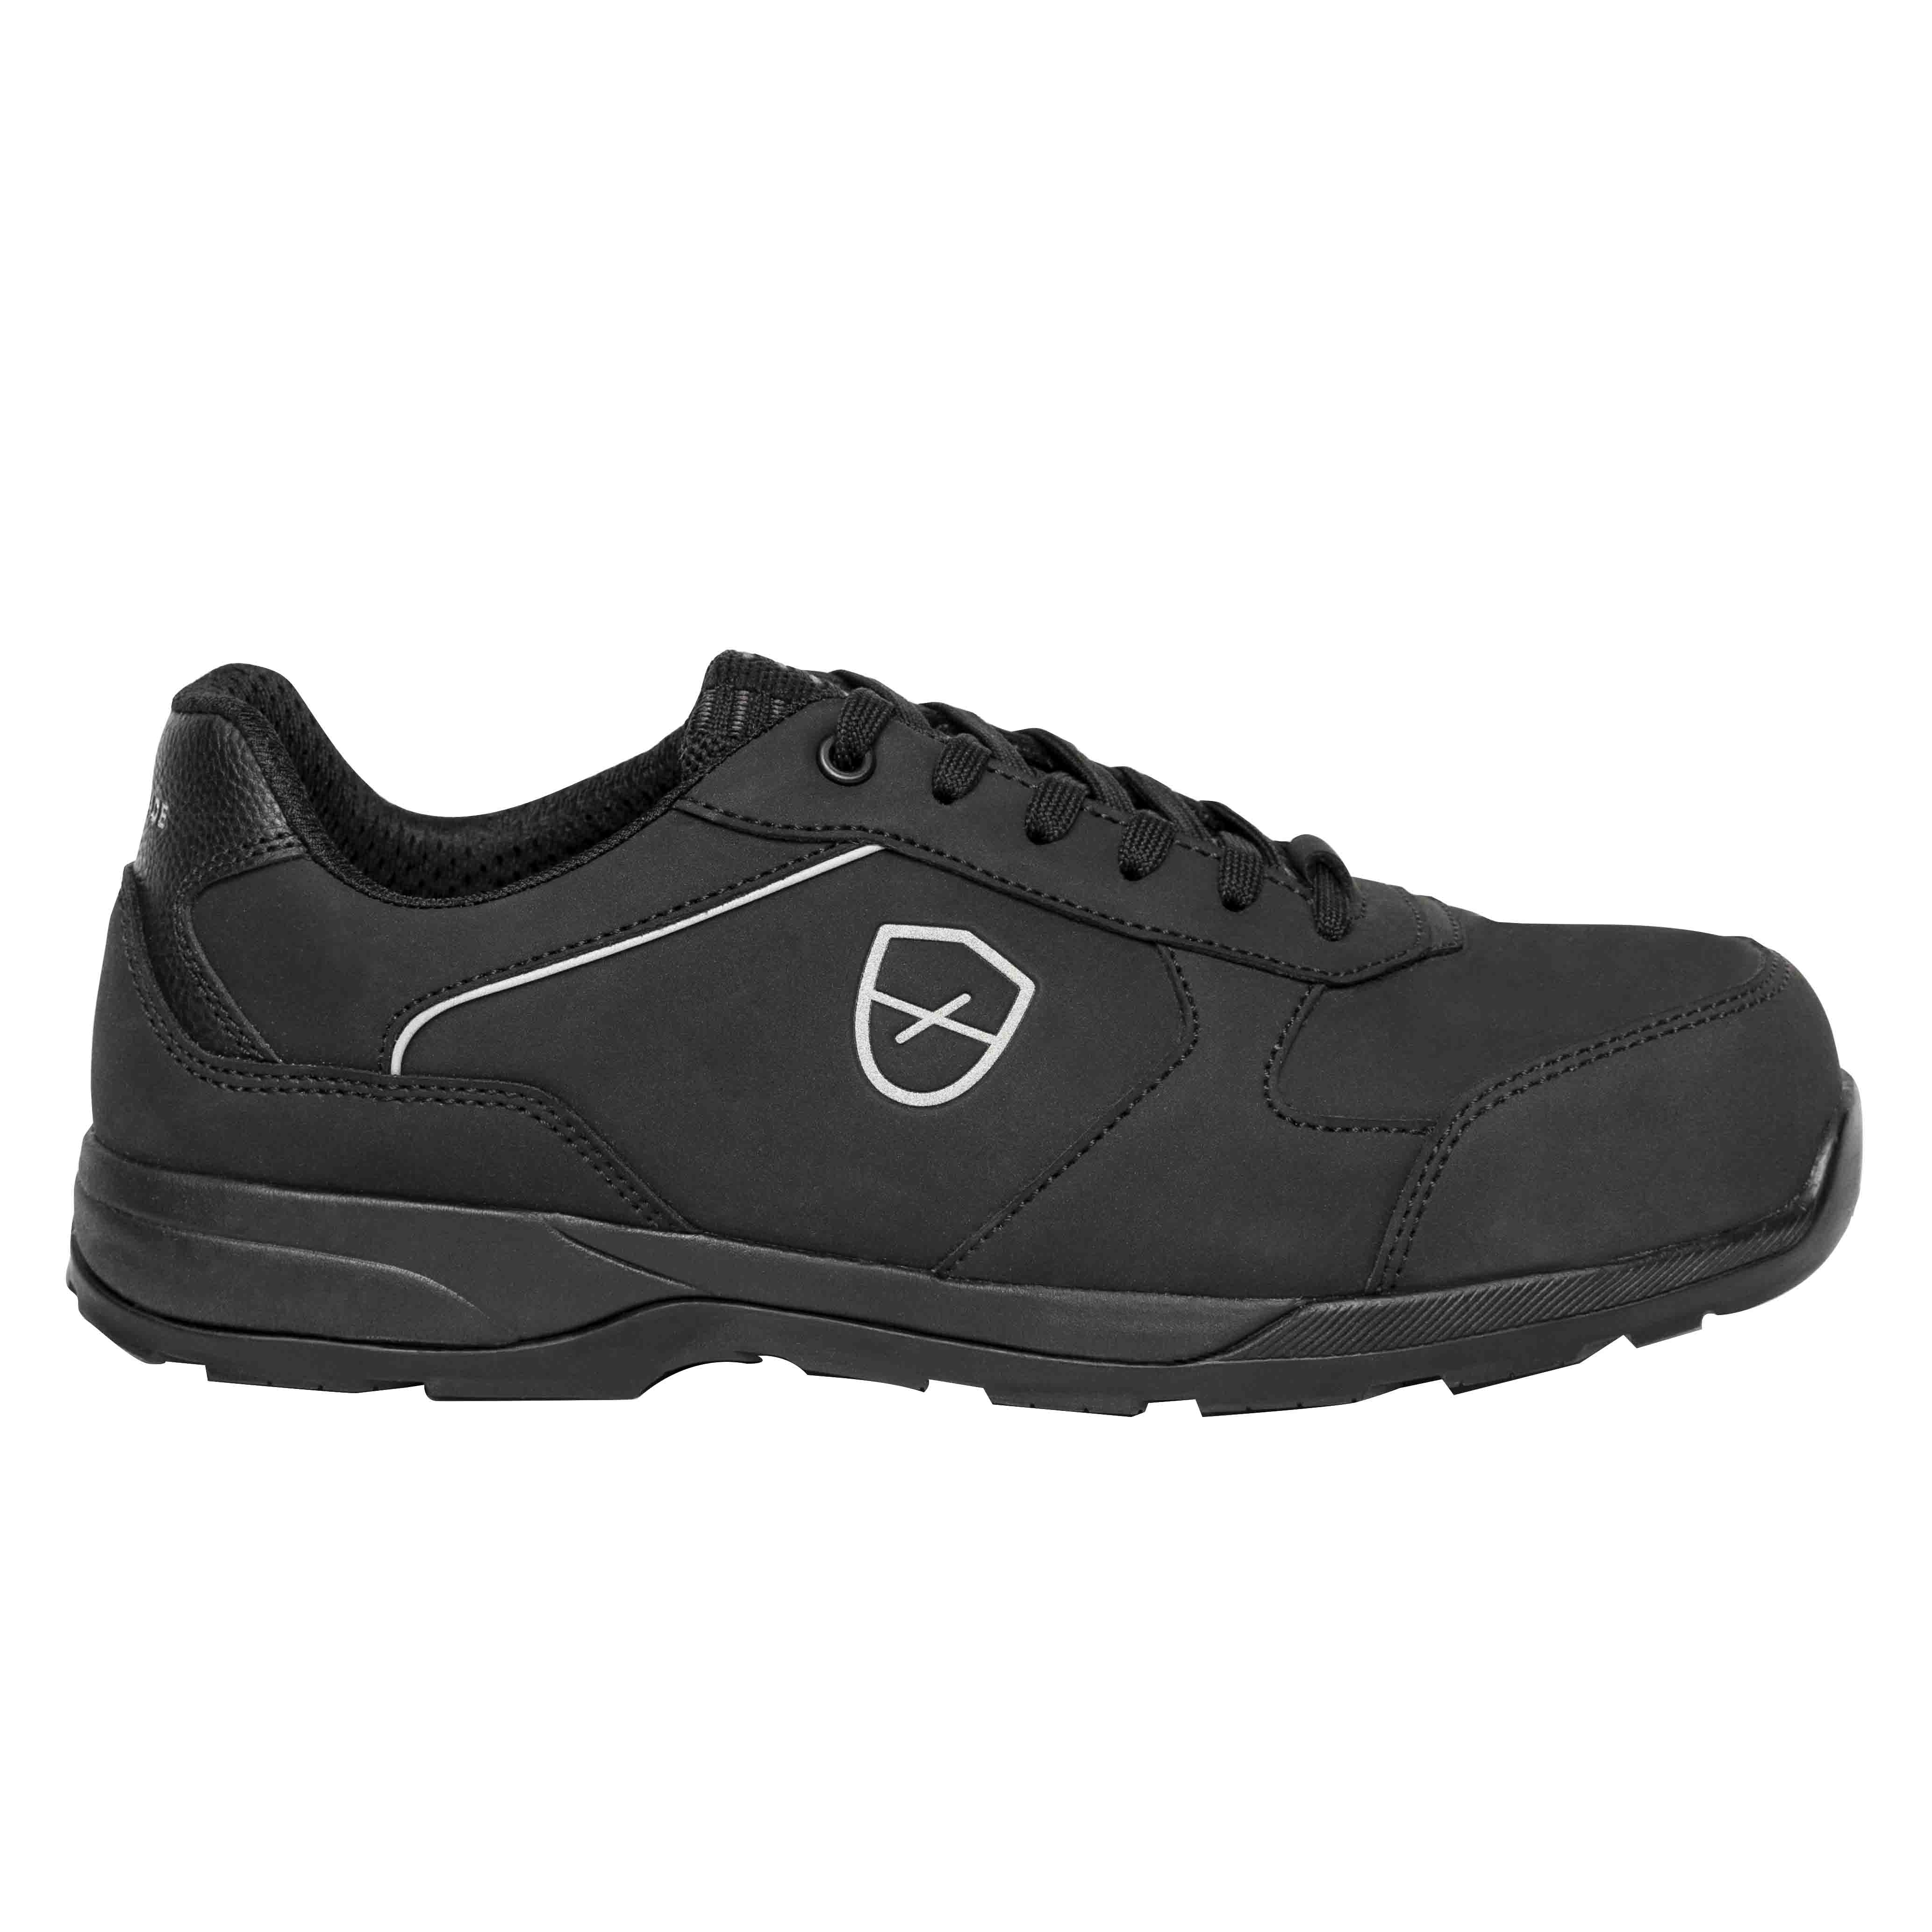 Chaussures de sécurité basses Romane Mixte, T 43 Noir, Antistatiques